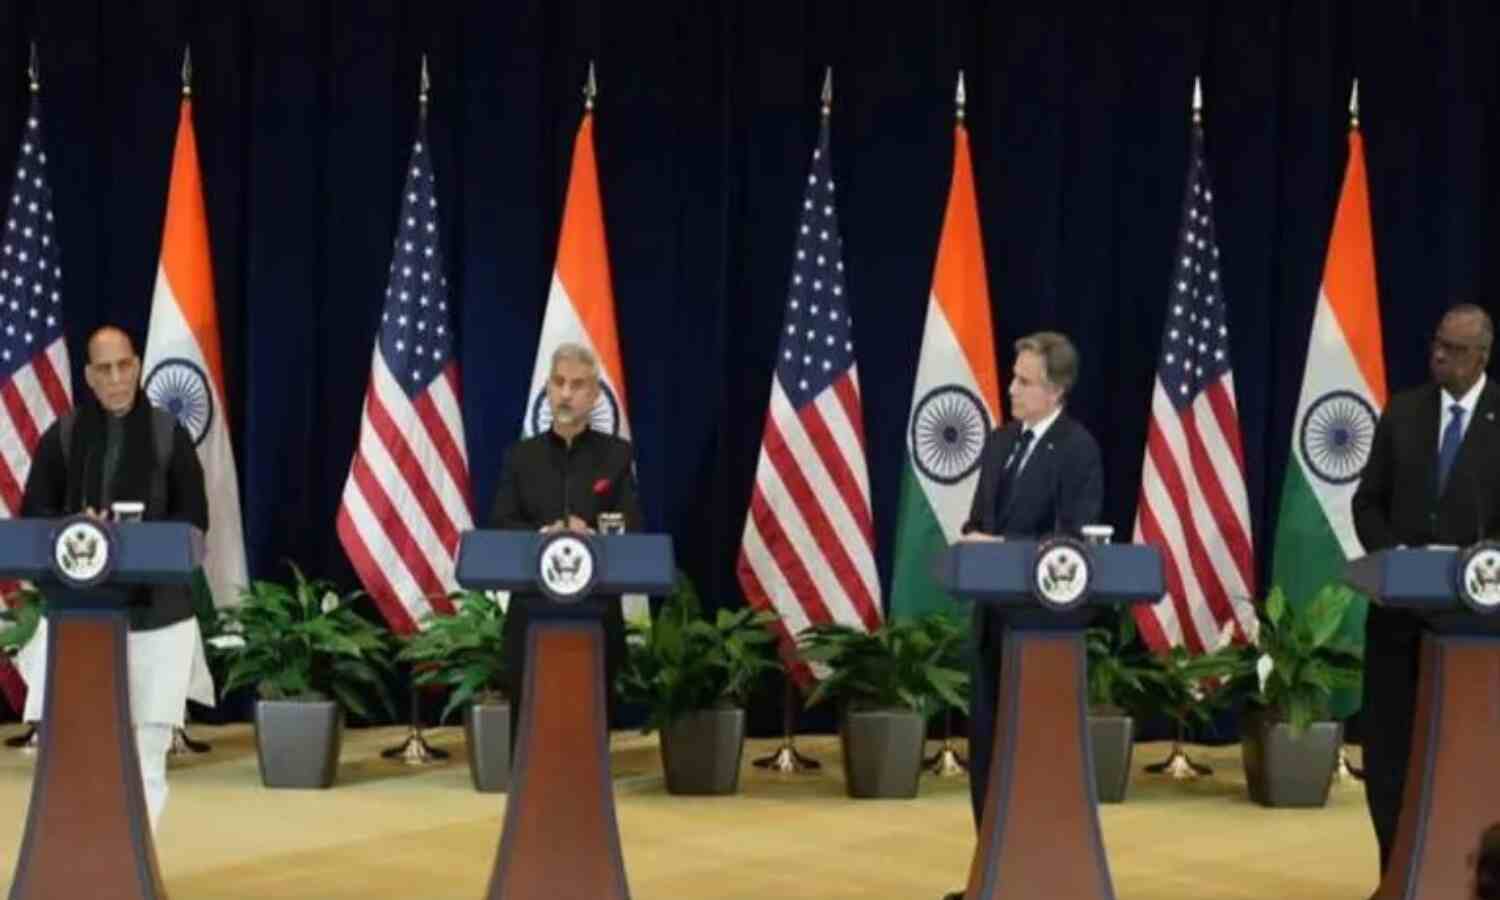 India-US 2+2 Dialogue : भारत में मानवाधिकारों की स्थिति चिंताजनक, अमेरिकी विदेश मंत्री ने दी चेतावनी